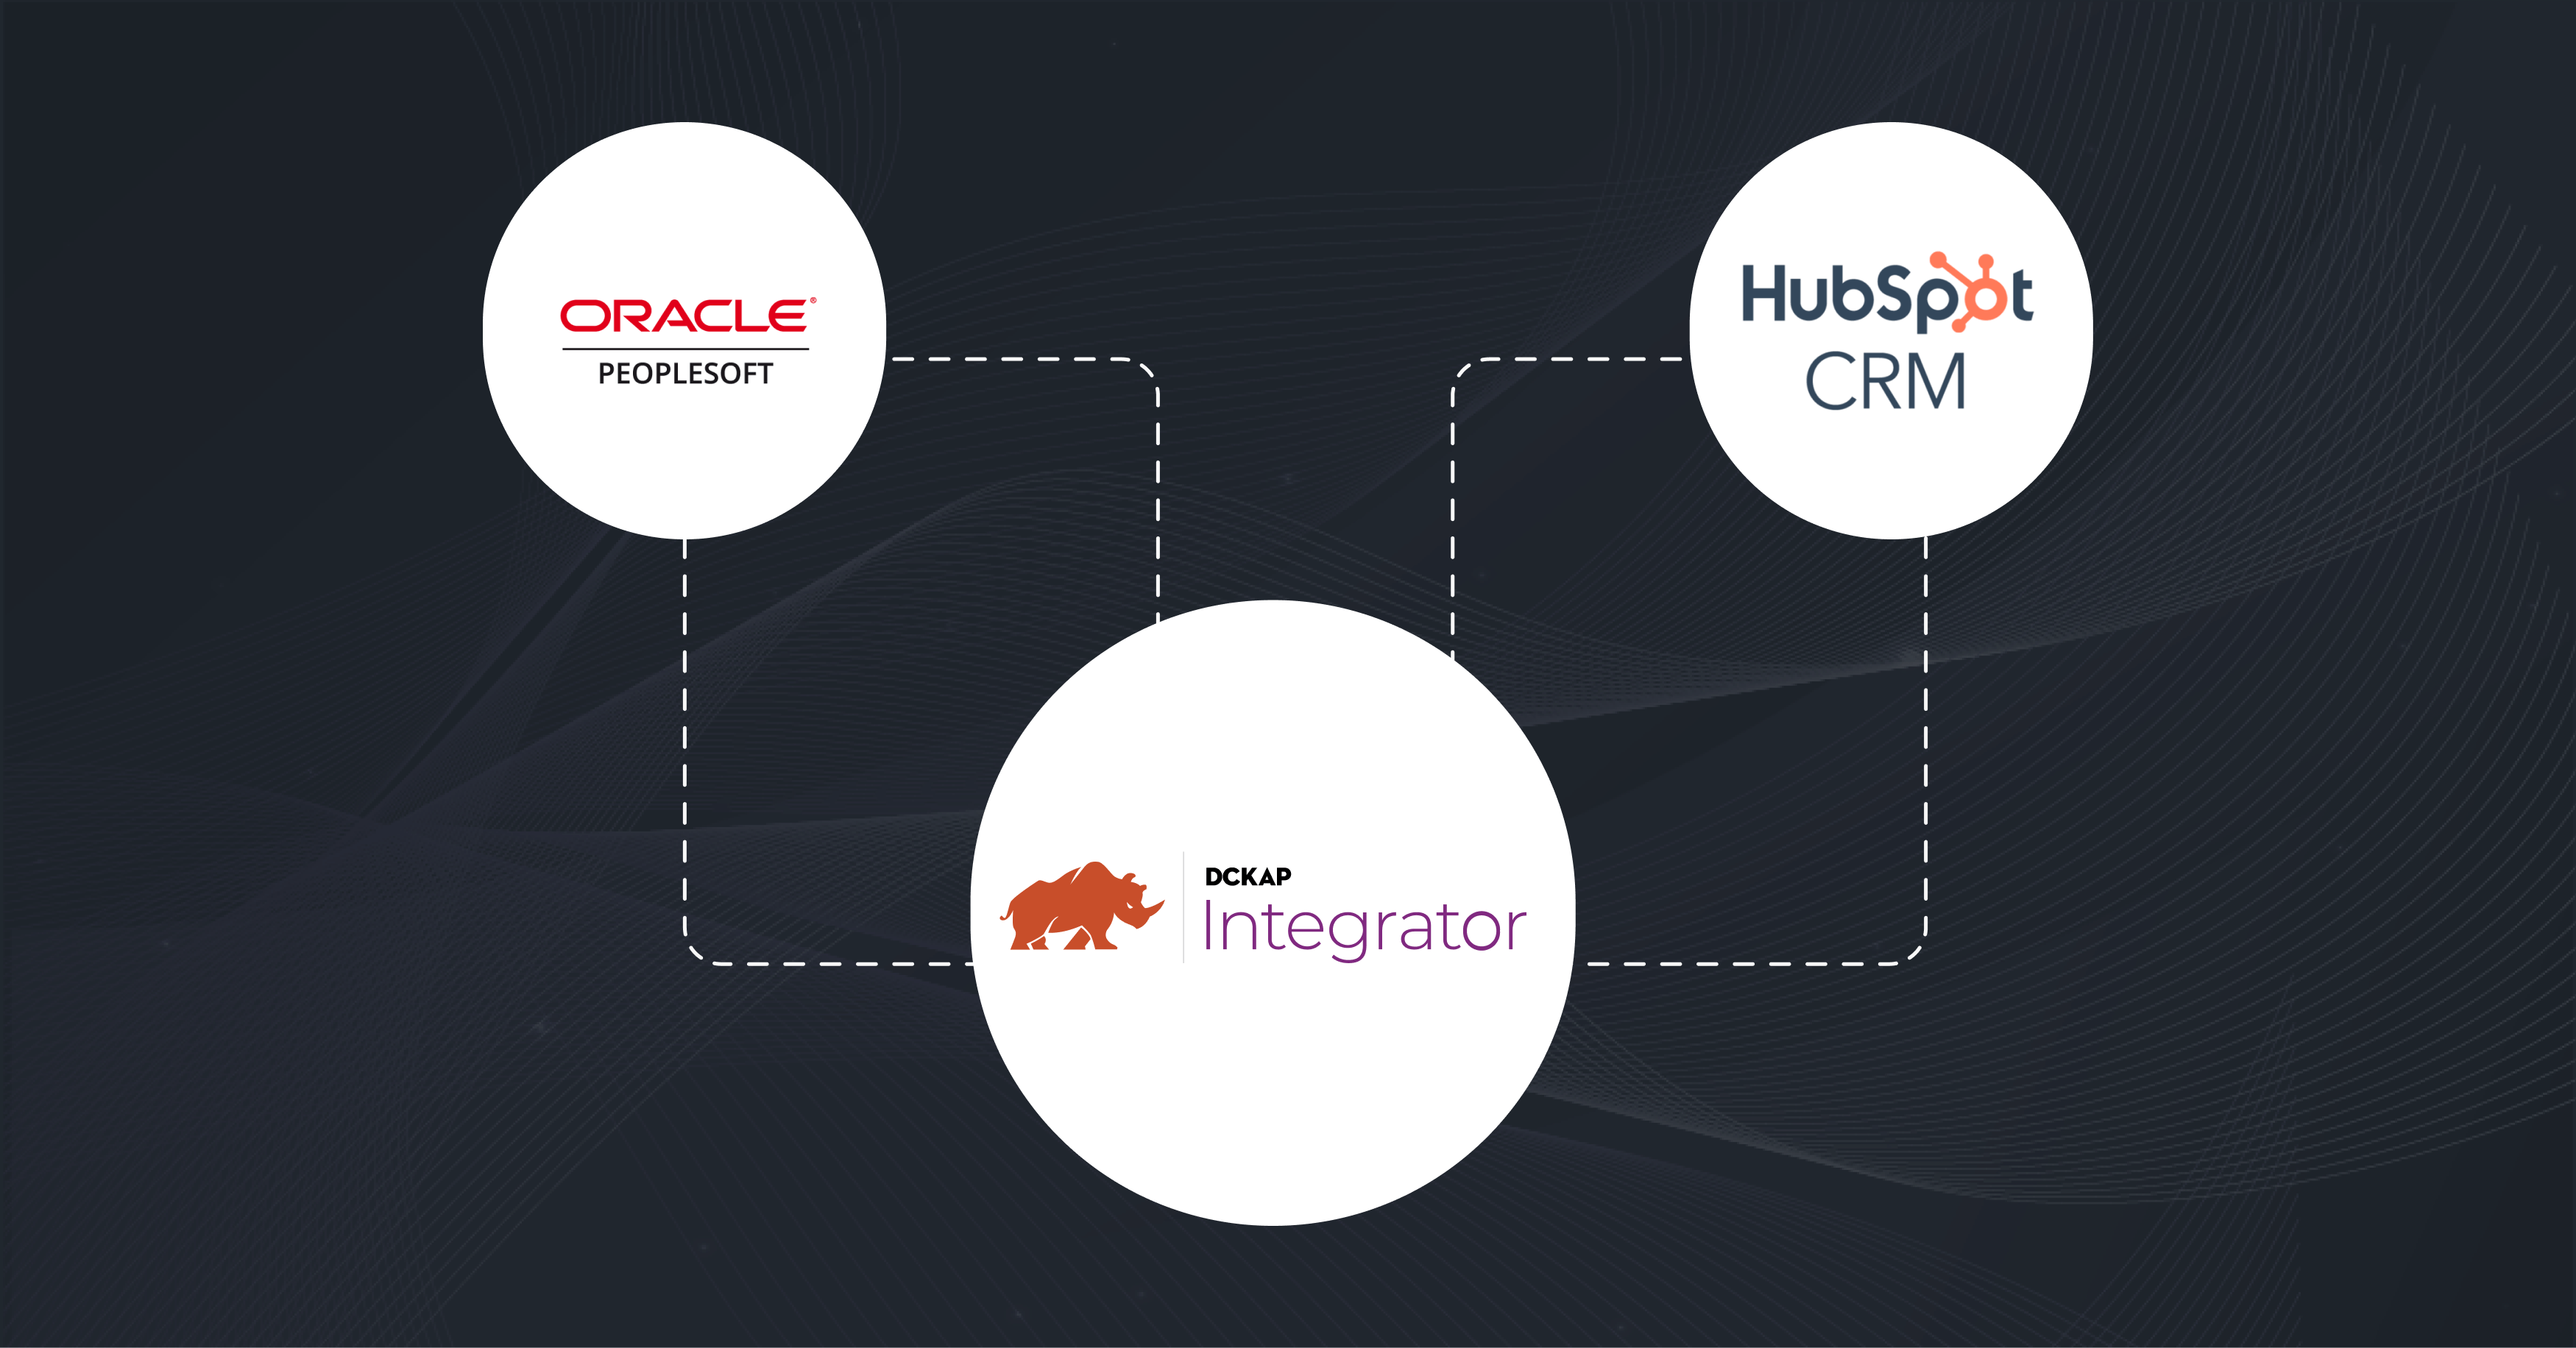 Oracle HubSpot integration using DCKAP integrator